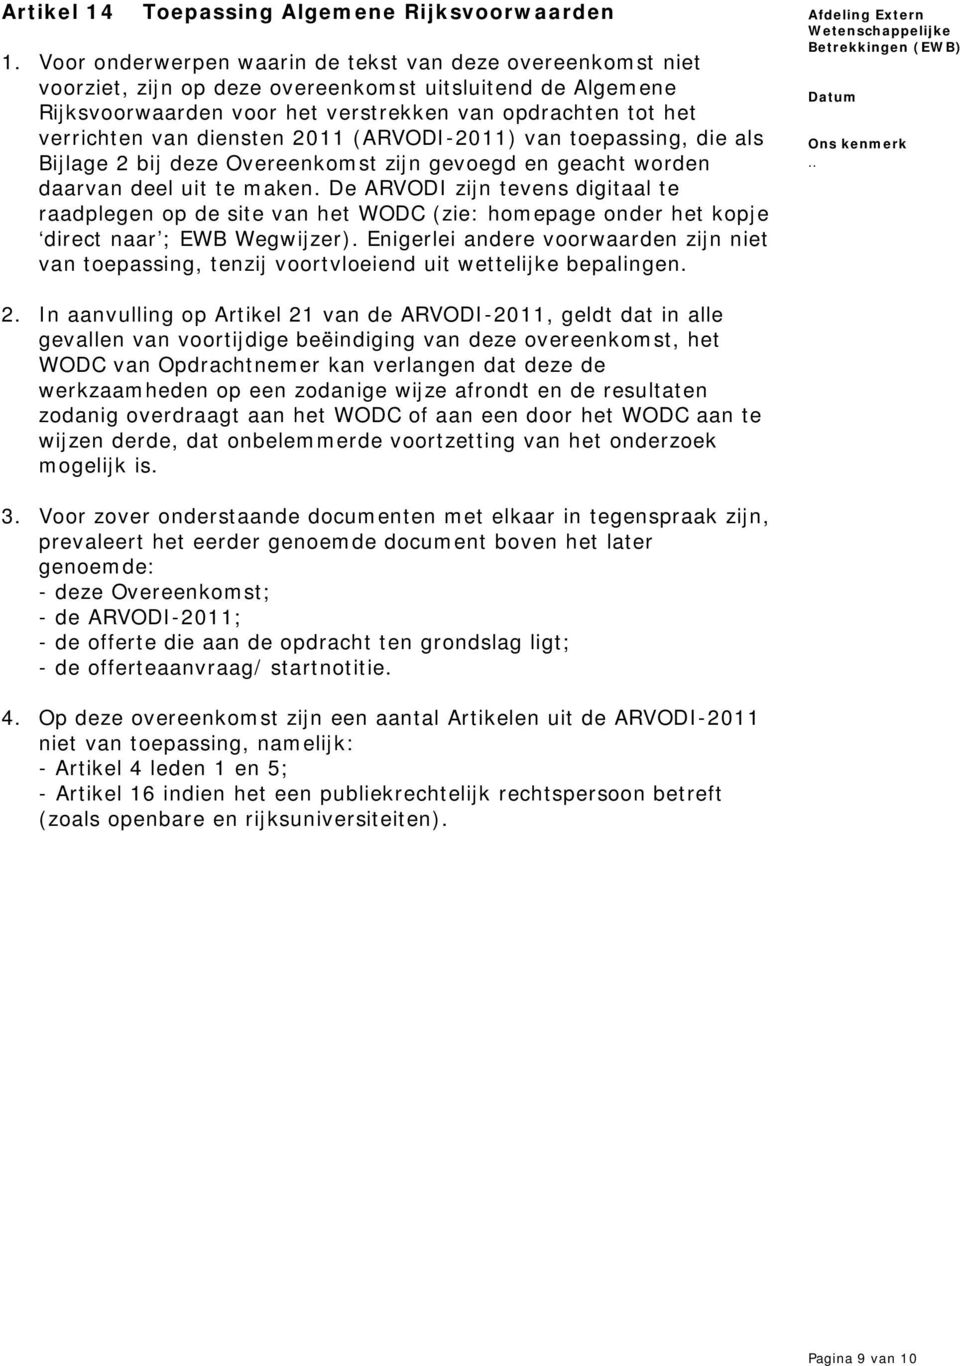 diensten 2011 (ARVODI-2011) van toepassing, die als Bijlage 2 bij deze Overeenkomst zijn gevoegd en geacht worden daarvan deel uit te maken.